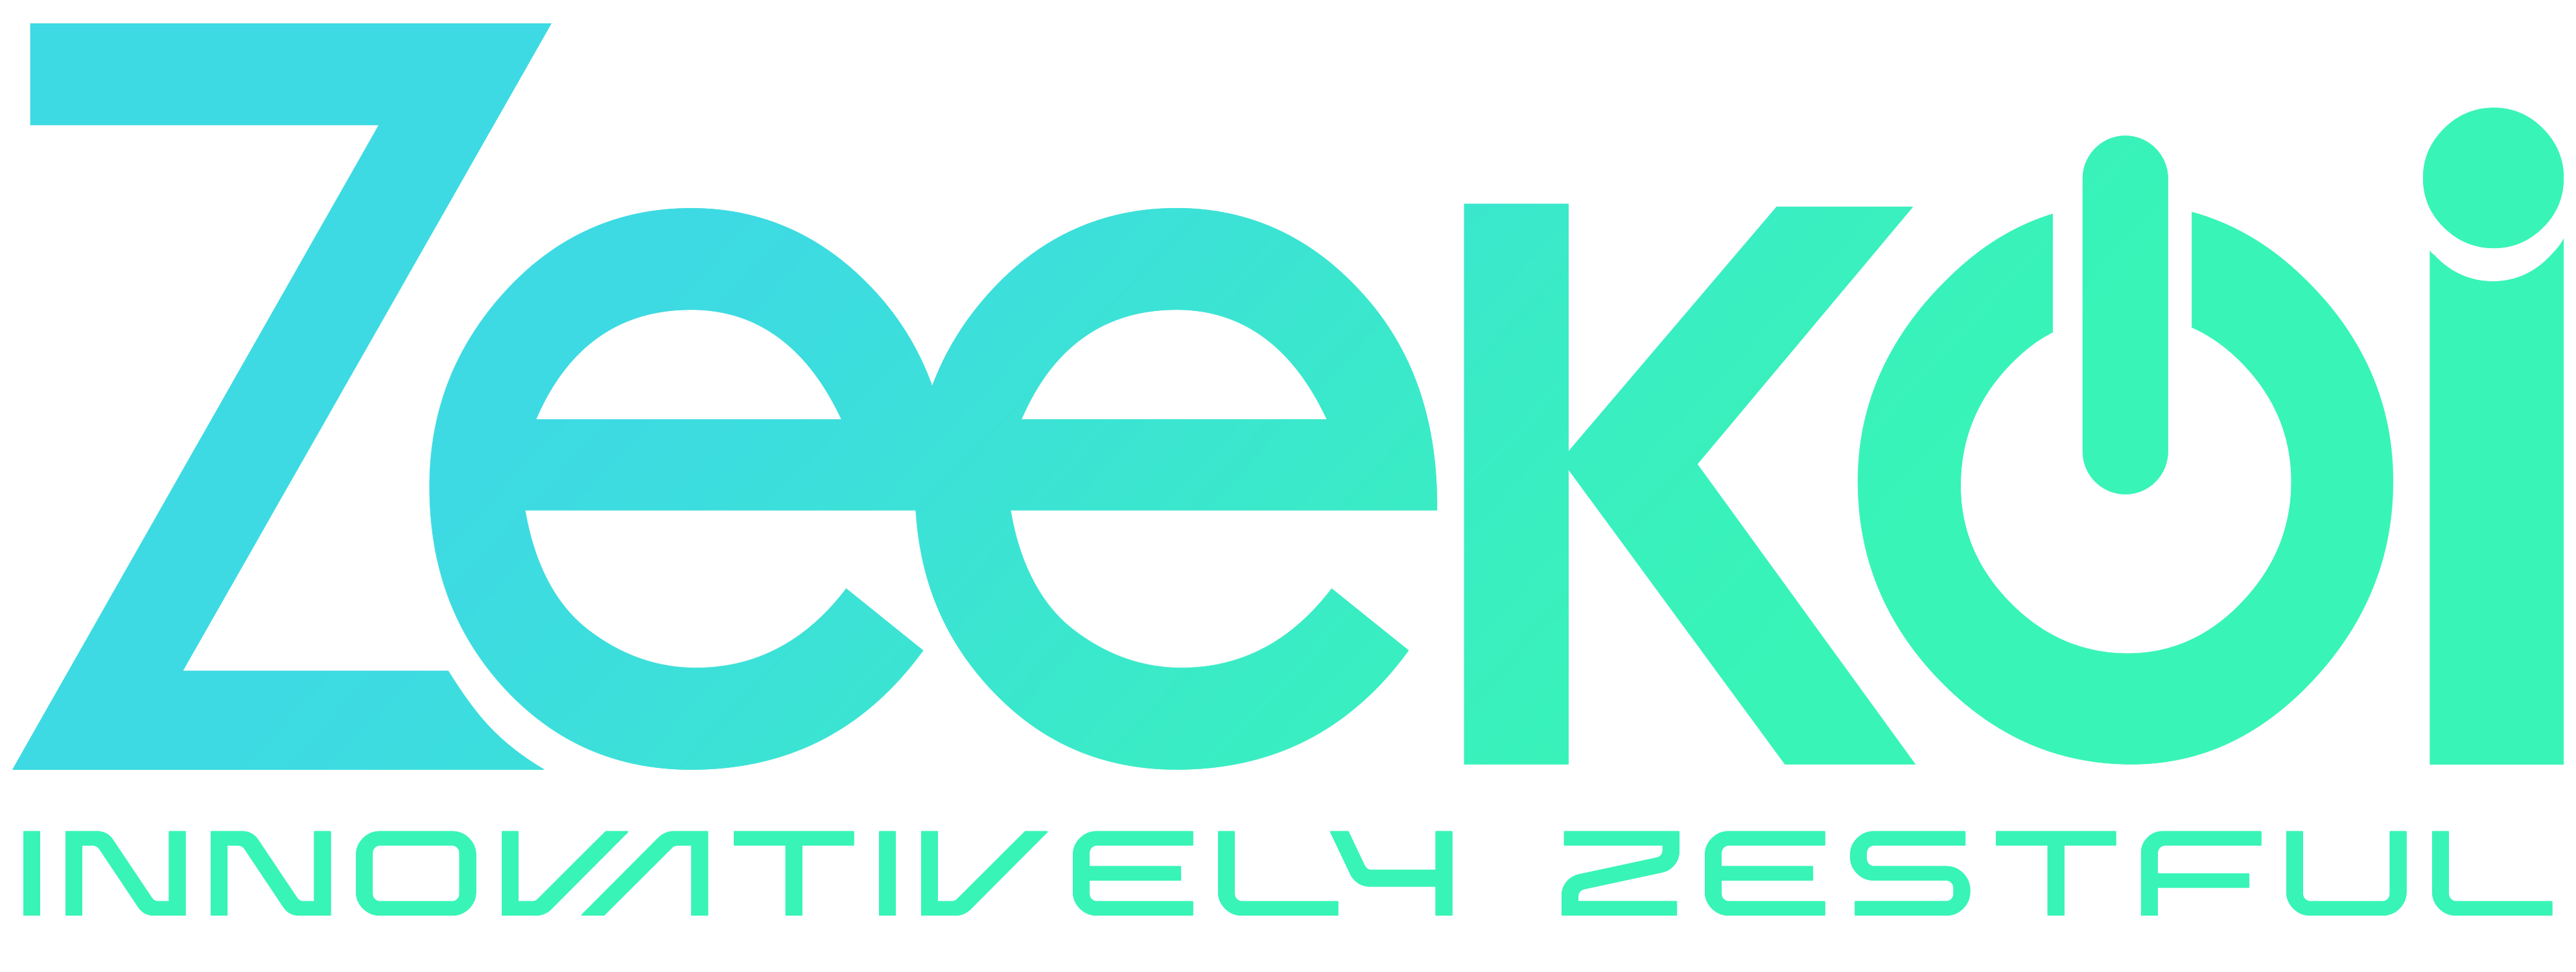 zeekoi logo1